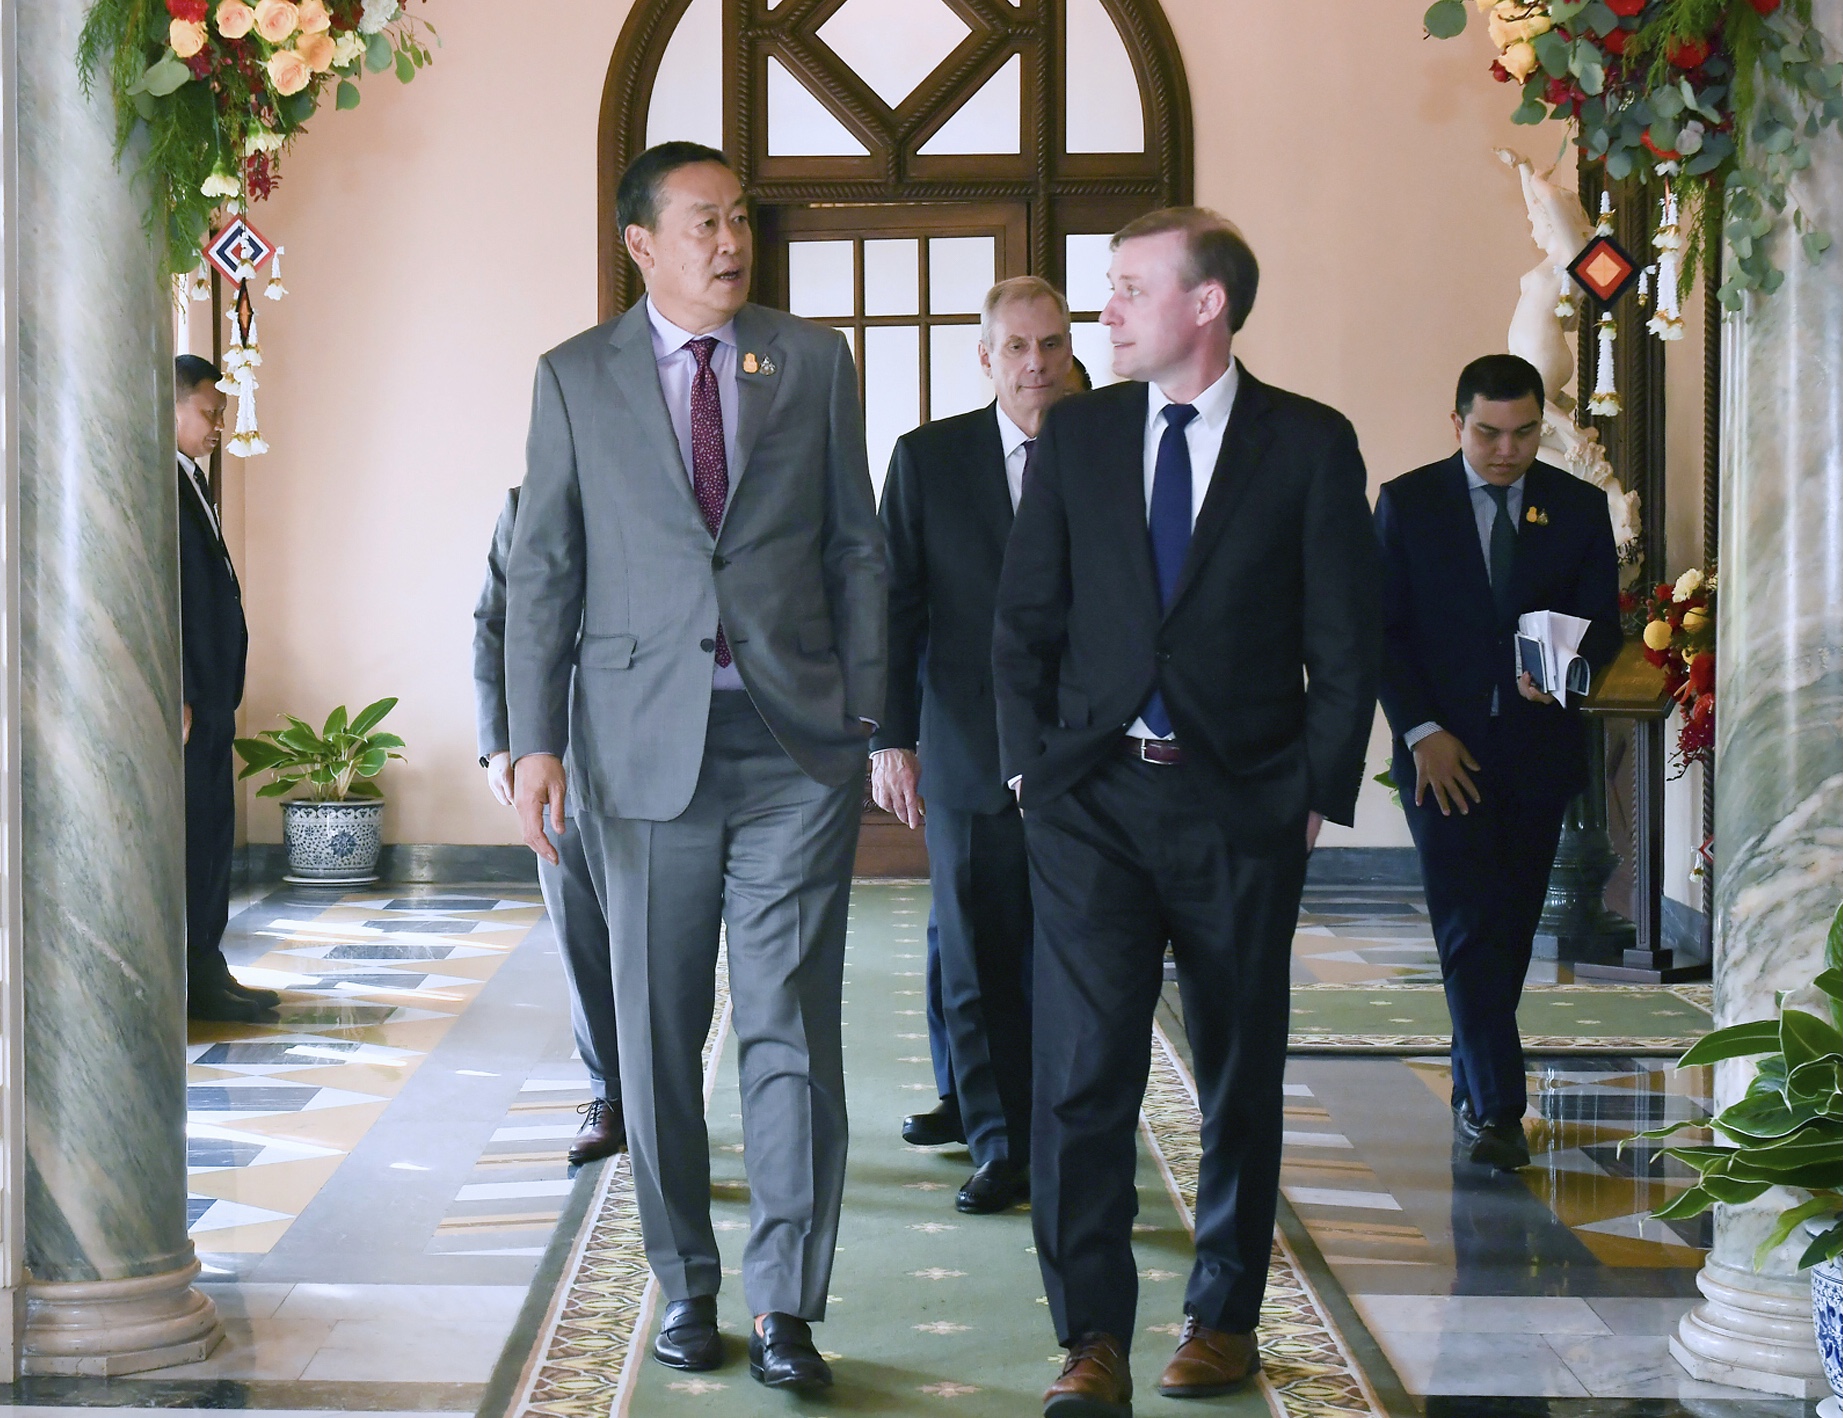 चीनका उच्च कूटनीतिज्ञ र अमेरिकी सुरक्षा सल्लाहकारबिच थाइल्याण्डमा भेटवार्ता हुने